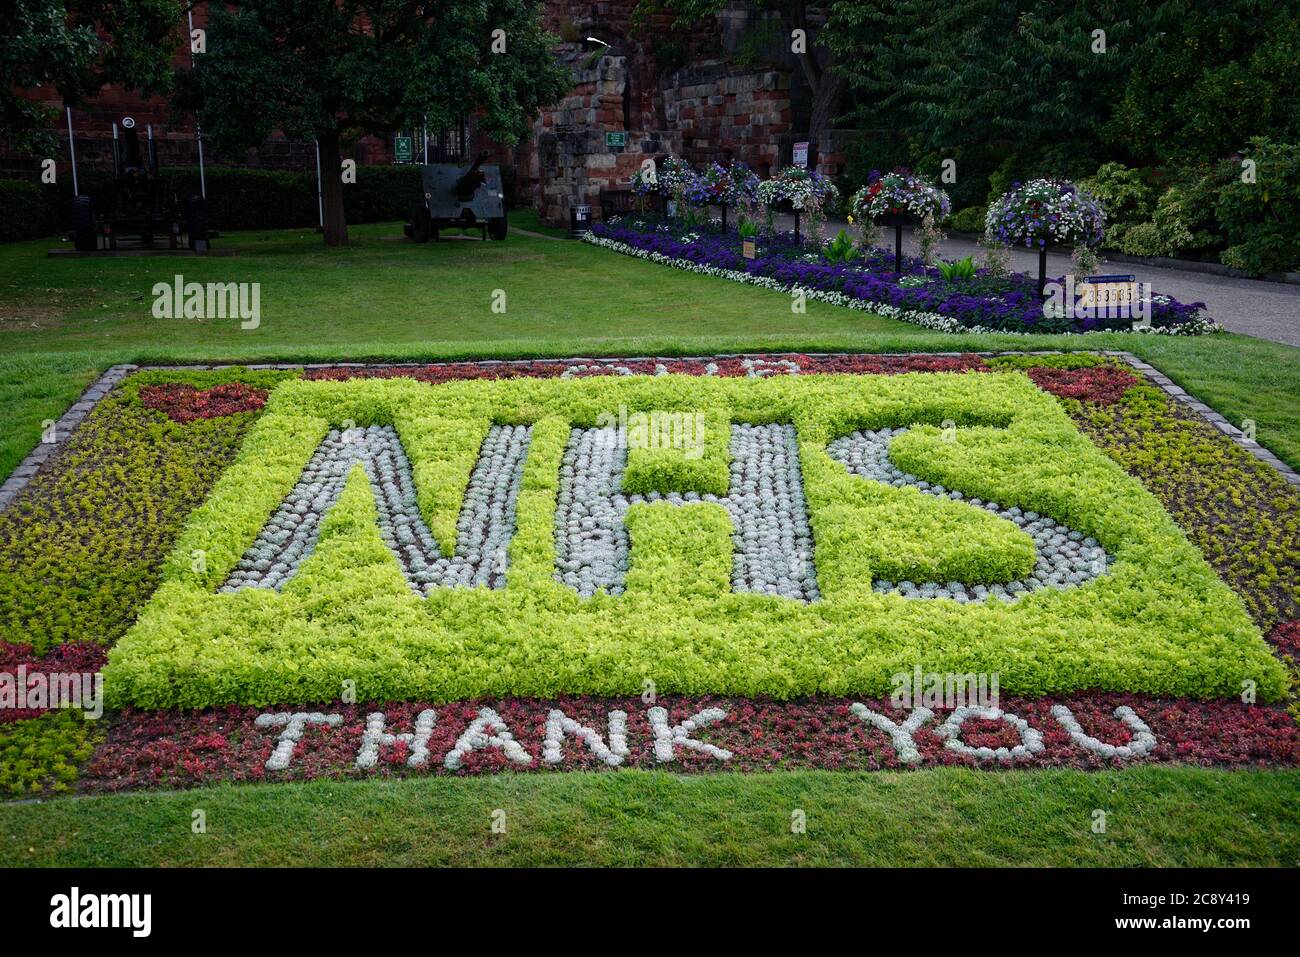 NHS Gracias en flores. Imagen de cierre de Covid 19 para mostrar apoyo al Servicio Nacional de Salud Foto de stock